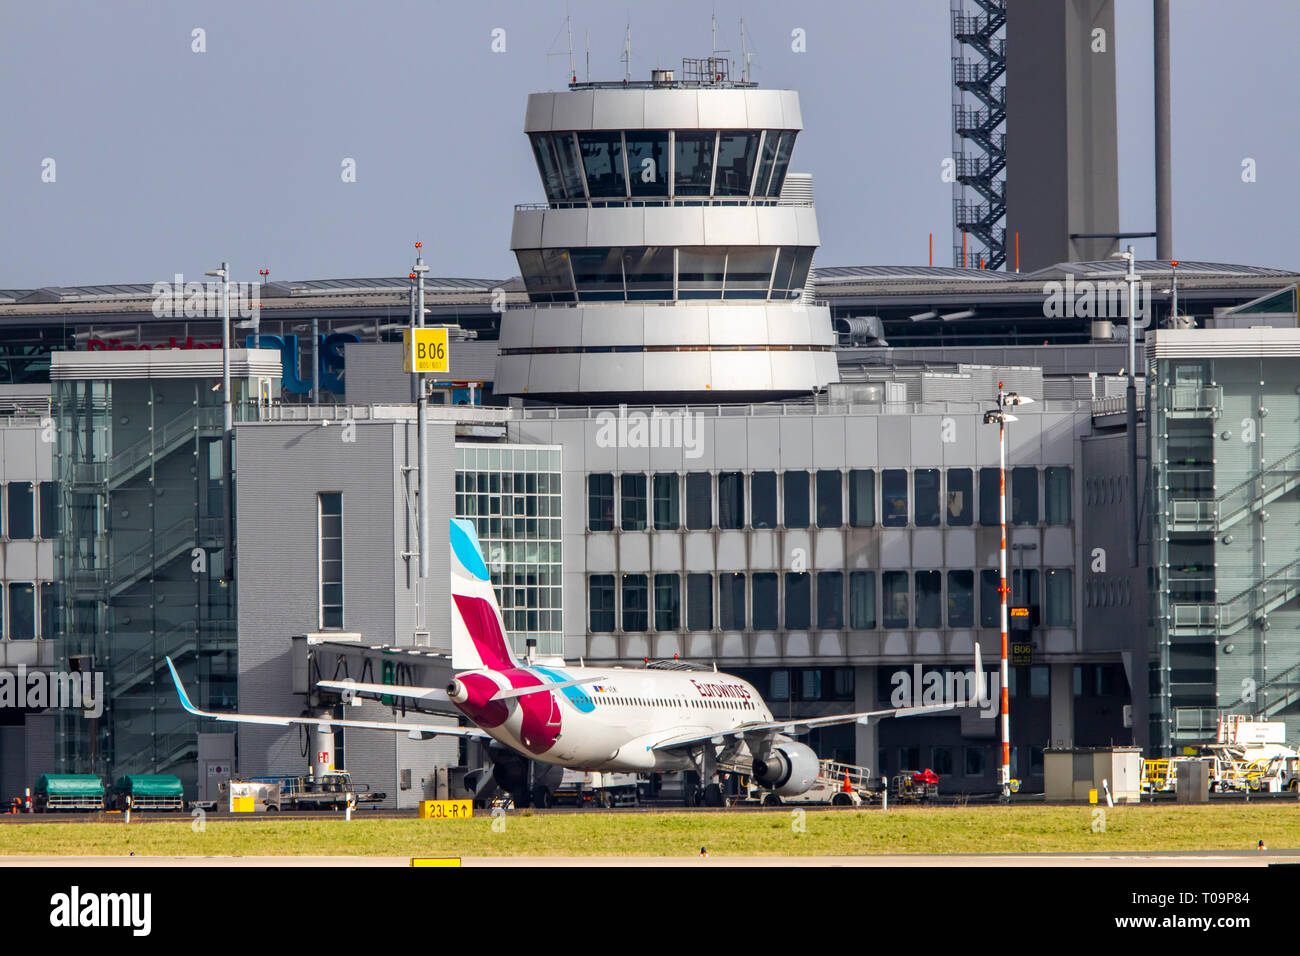 L'aeroporto internazionale di Düsseldorf, DUS, Eurowings, del controllo del traffico aereo Tower, Foto Stock